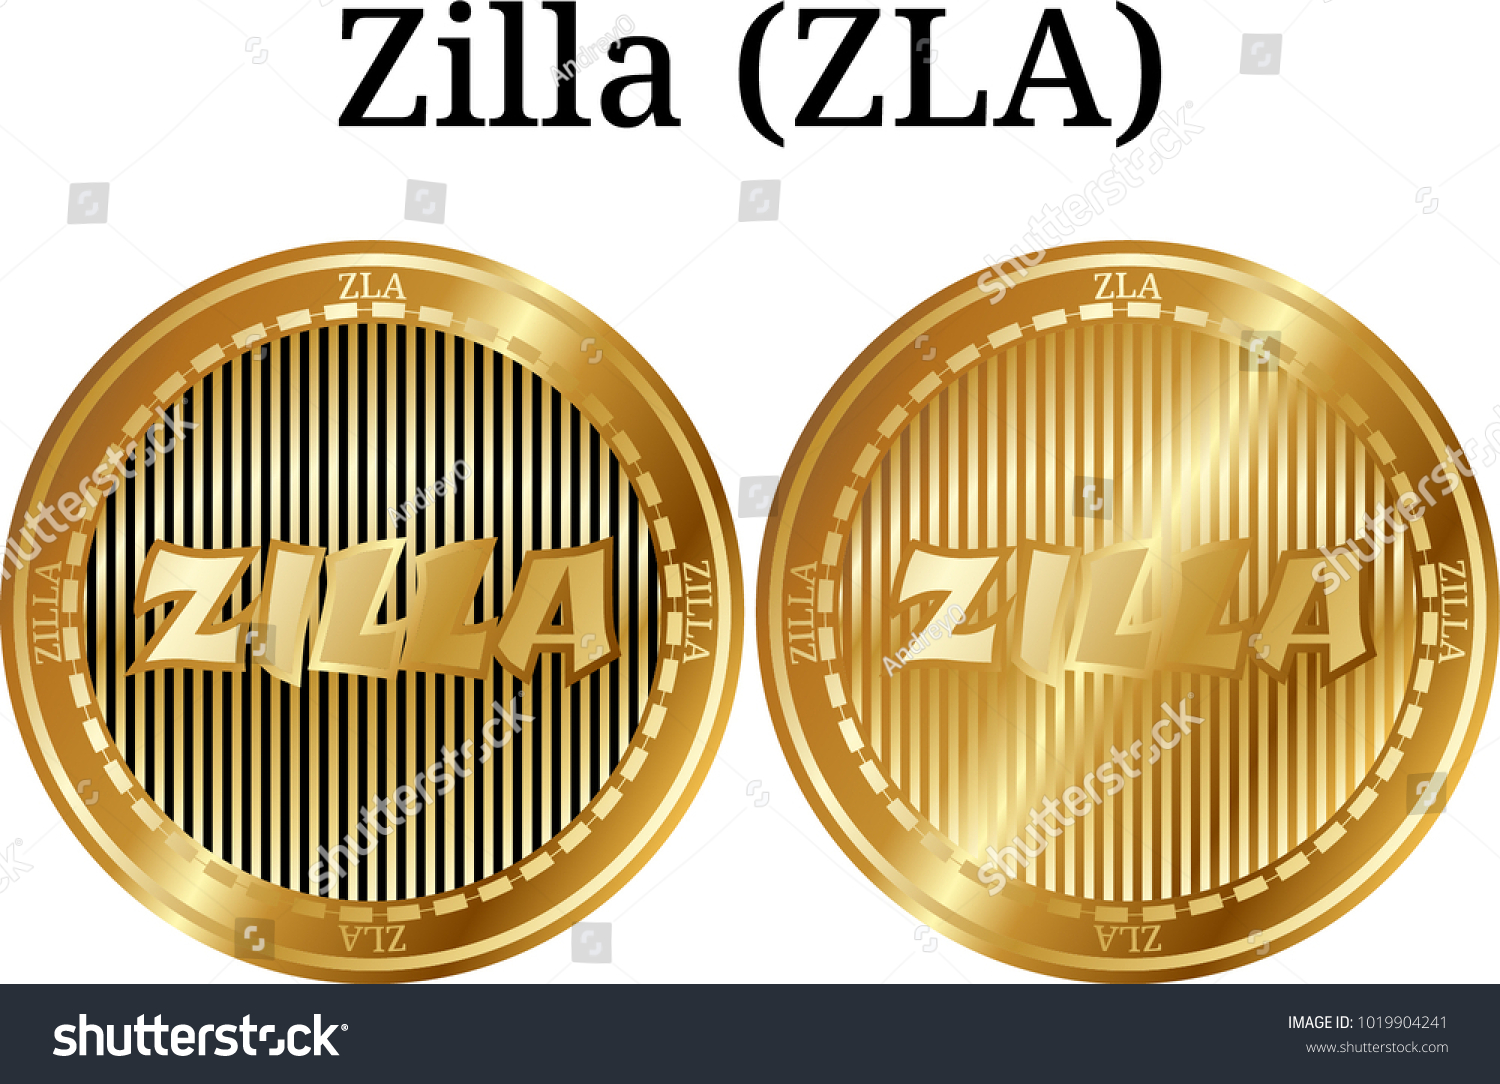 Set Physical Golden Coin Zilla Zla Stock Vector Royalty